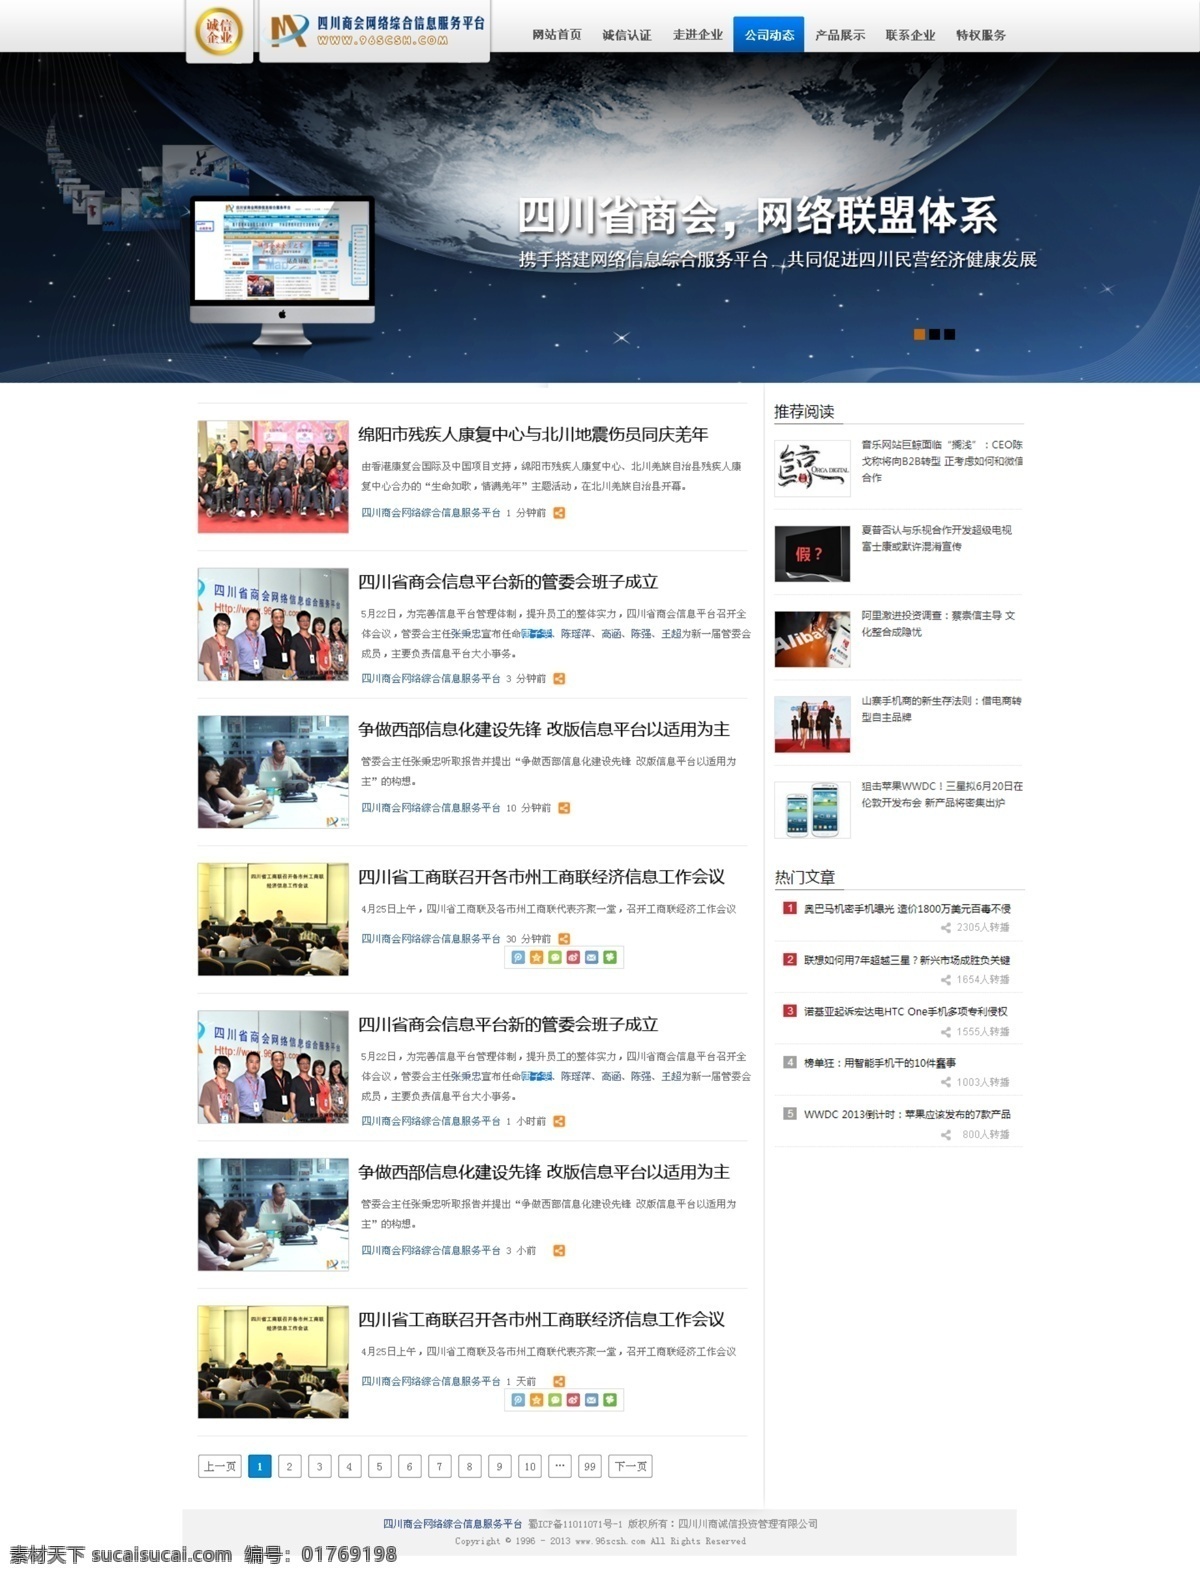 网页 中文 模板 大气 网页模板 网站首页 中文模板 整套网站模板 整套网页模板 蓝色调网站 网页素材